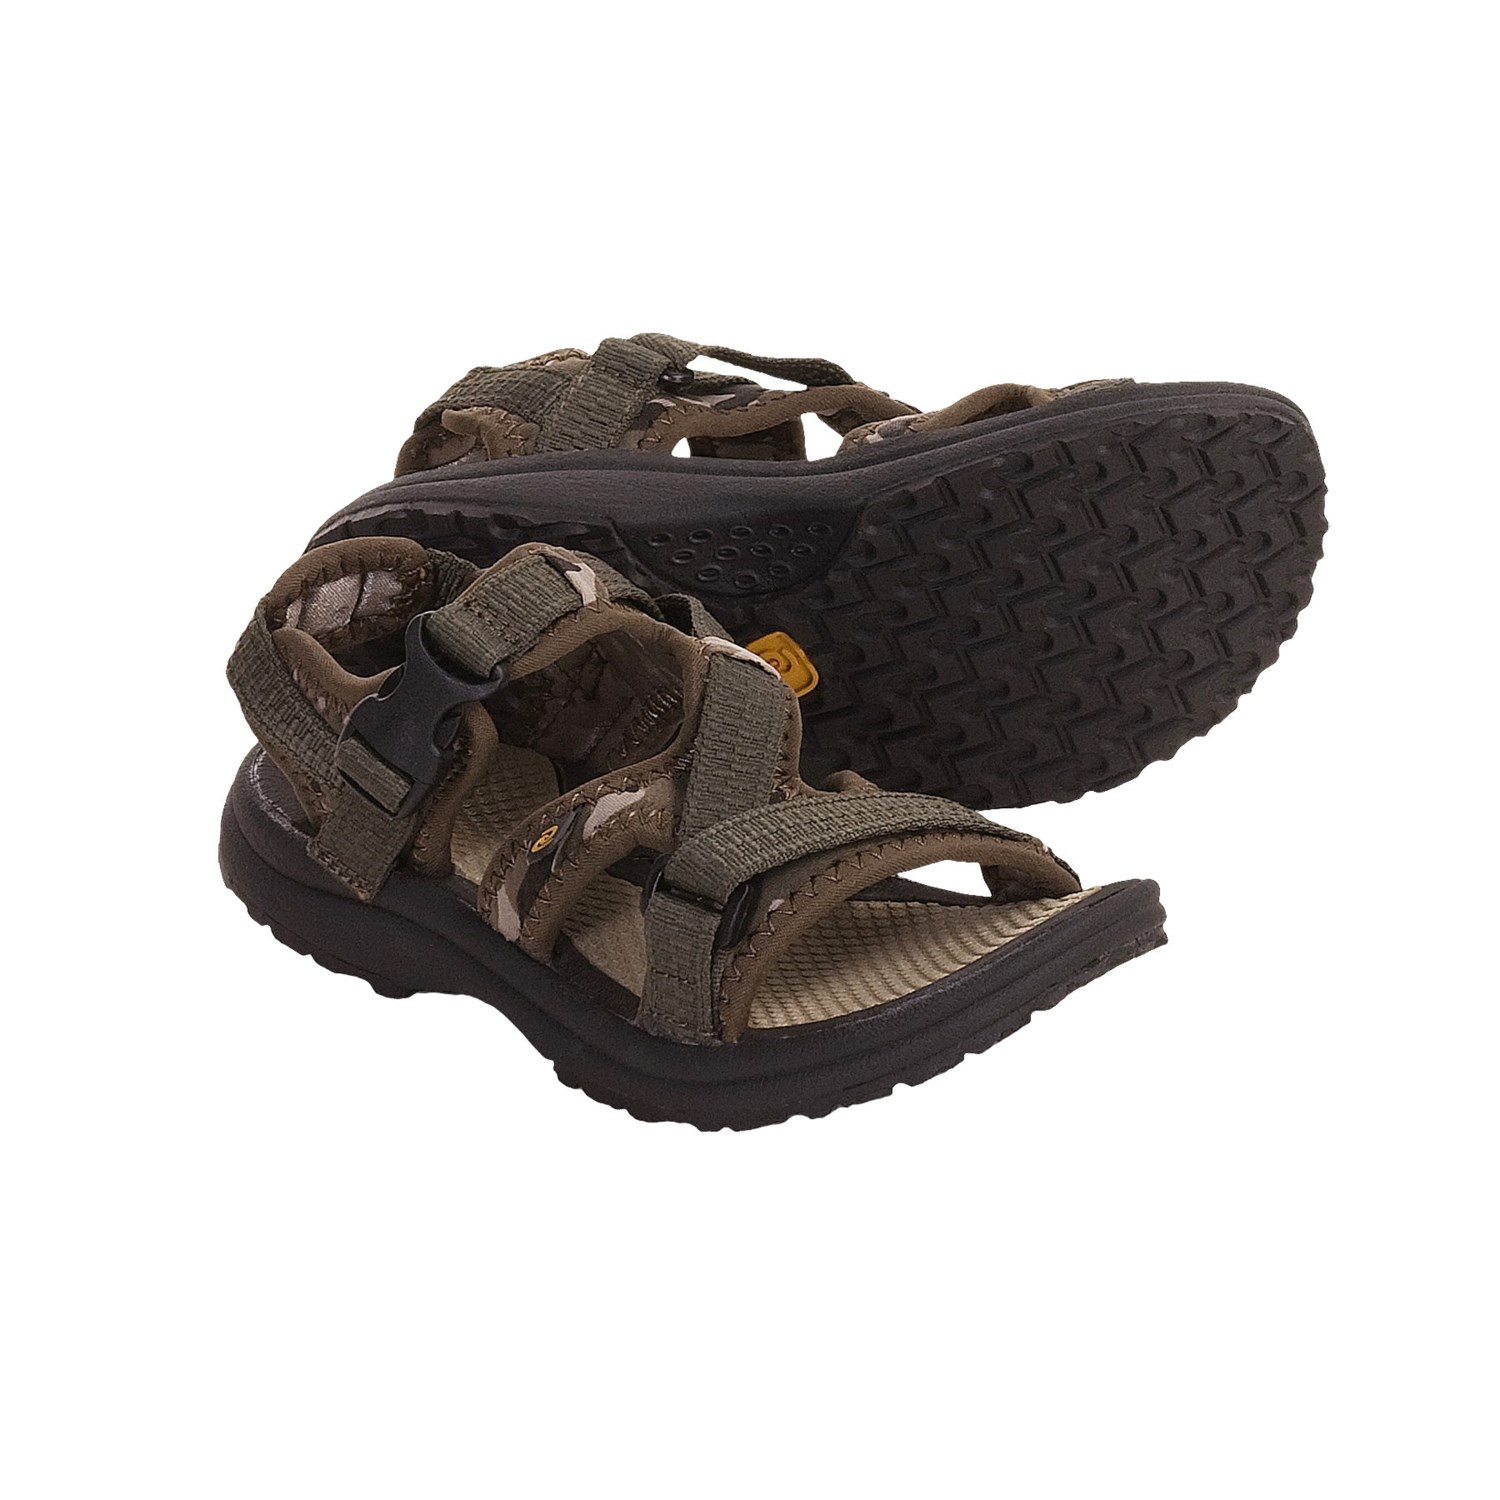 Rafters Drifter Jr. Sport Sandals (For Kids) 3239V - Save 66%